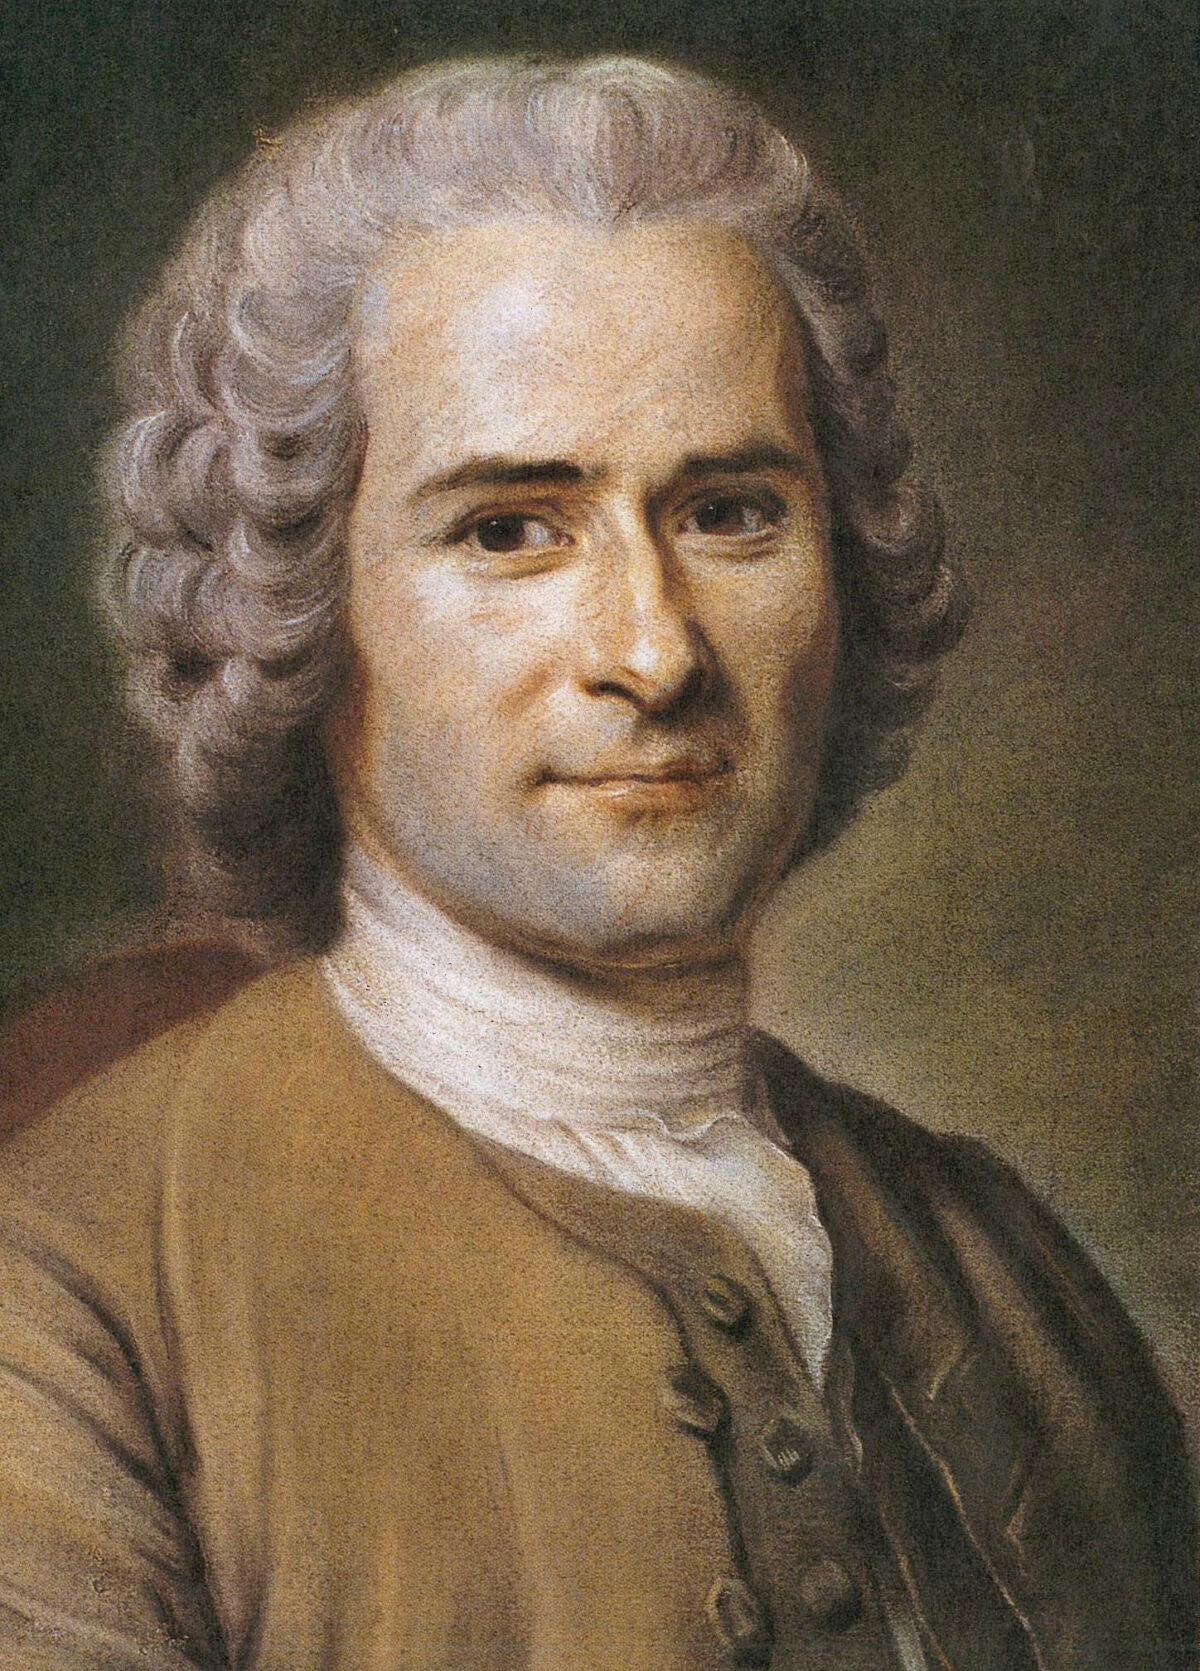 Jean-Jacques Rousseau, circa third quarter of 18th century. (Maurice Quentin de La Tour/Public Domain)